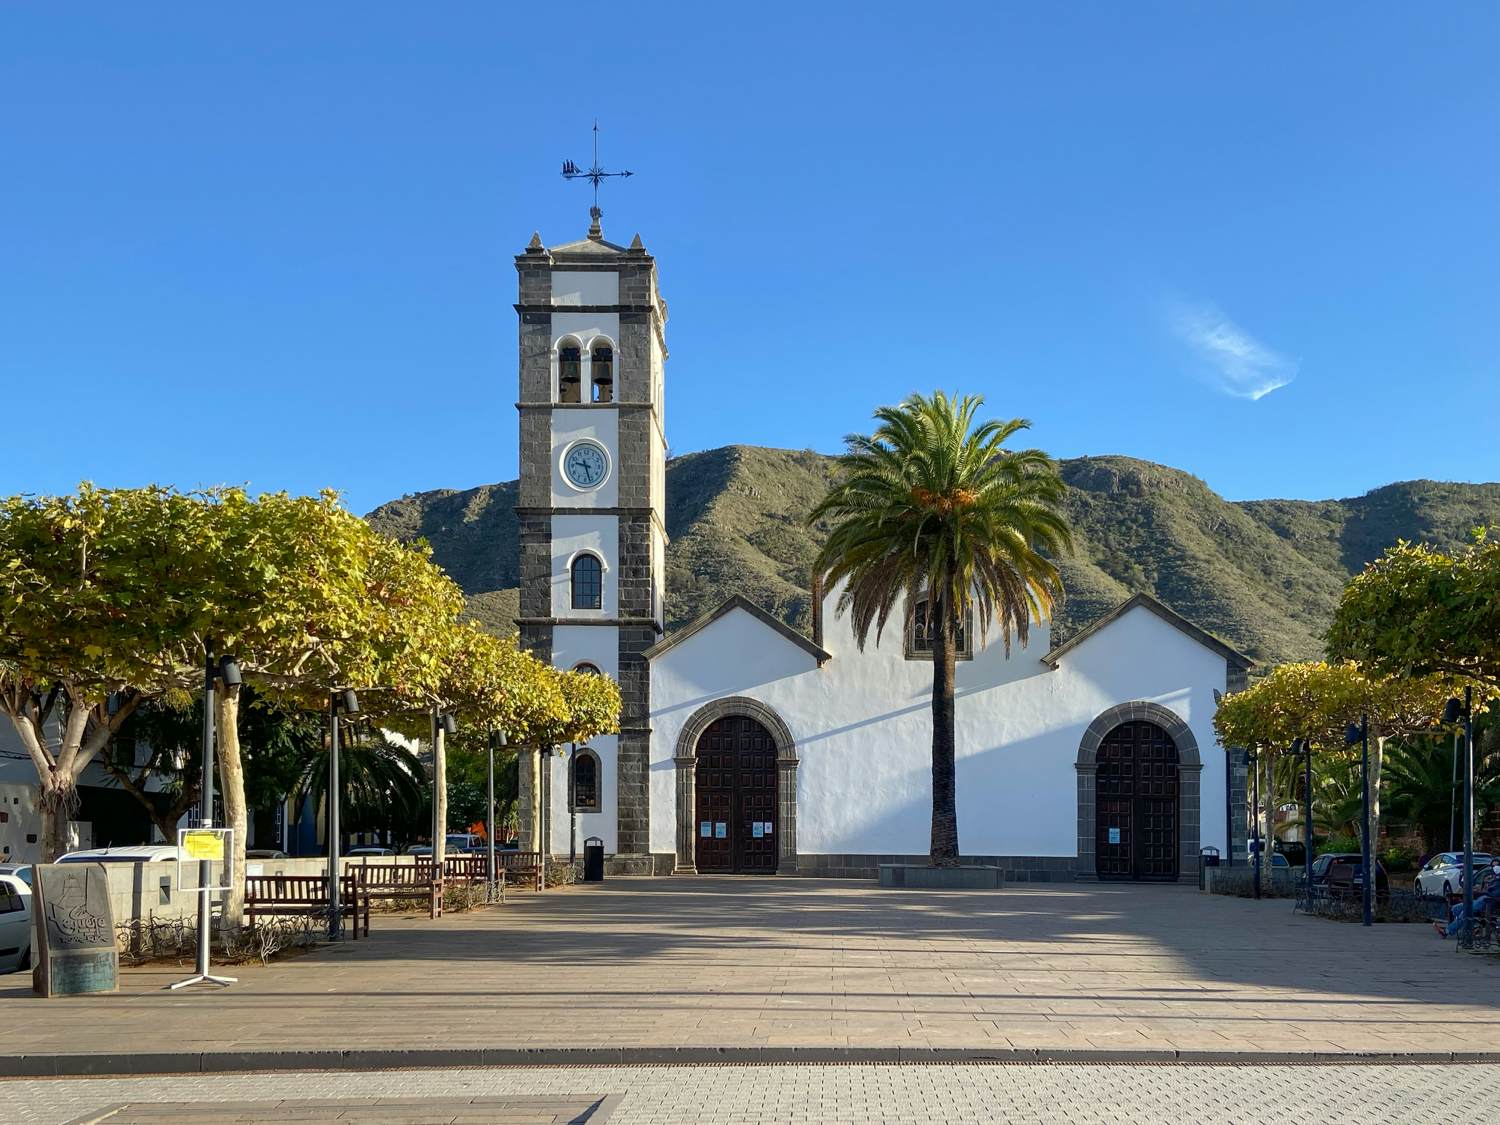 Startpunkt: Kirchplatz (Plaza San Marcos) in Tegueste